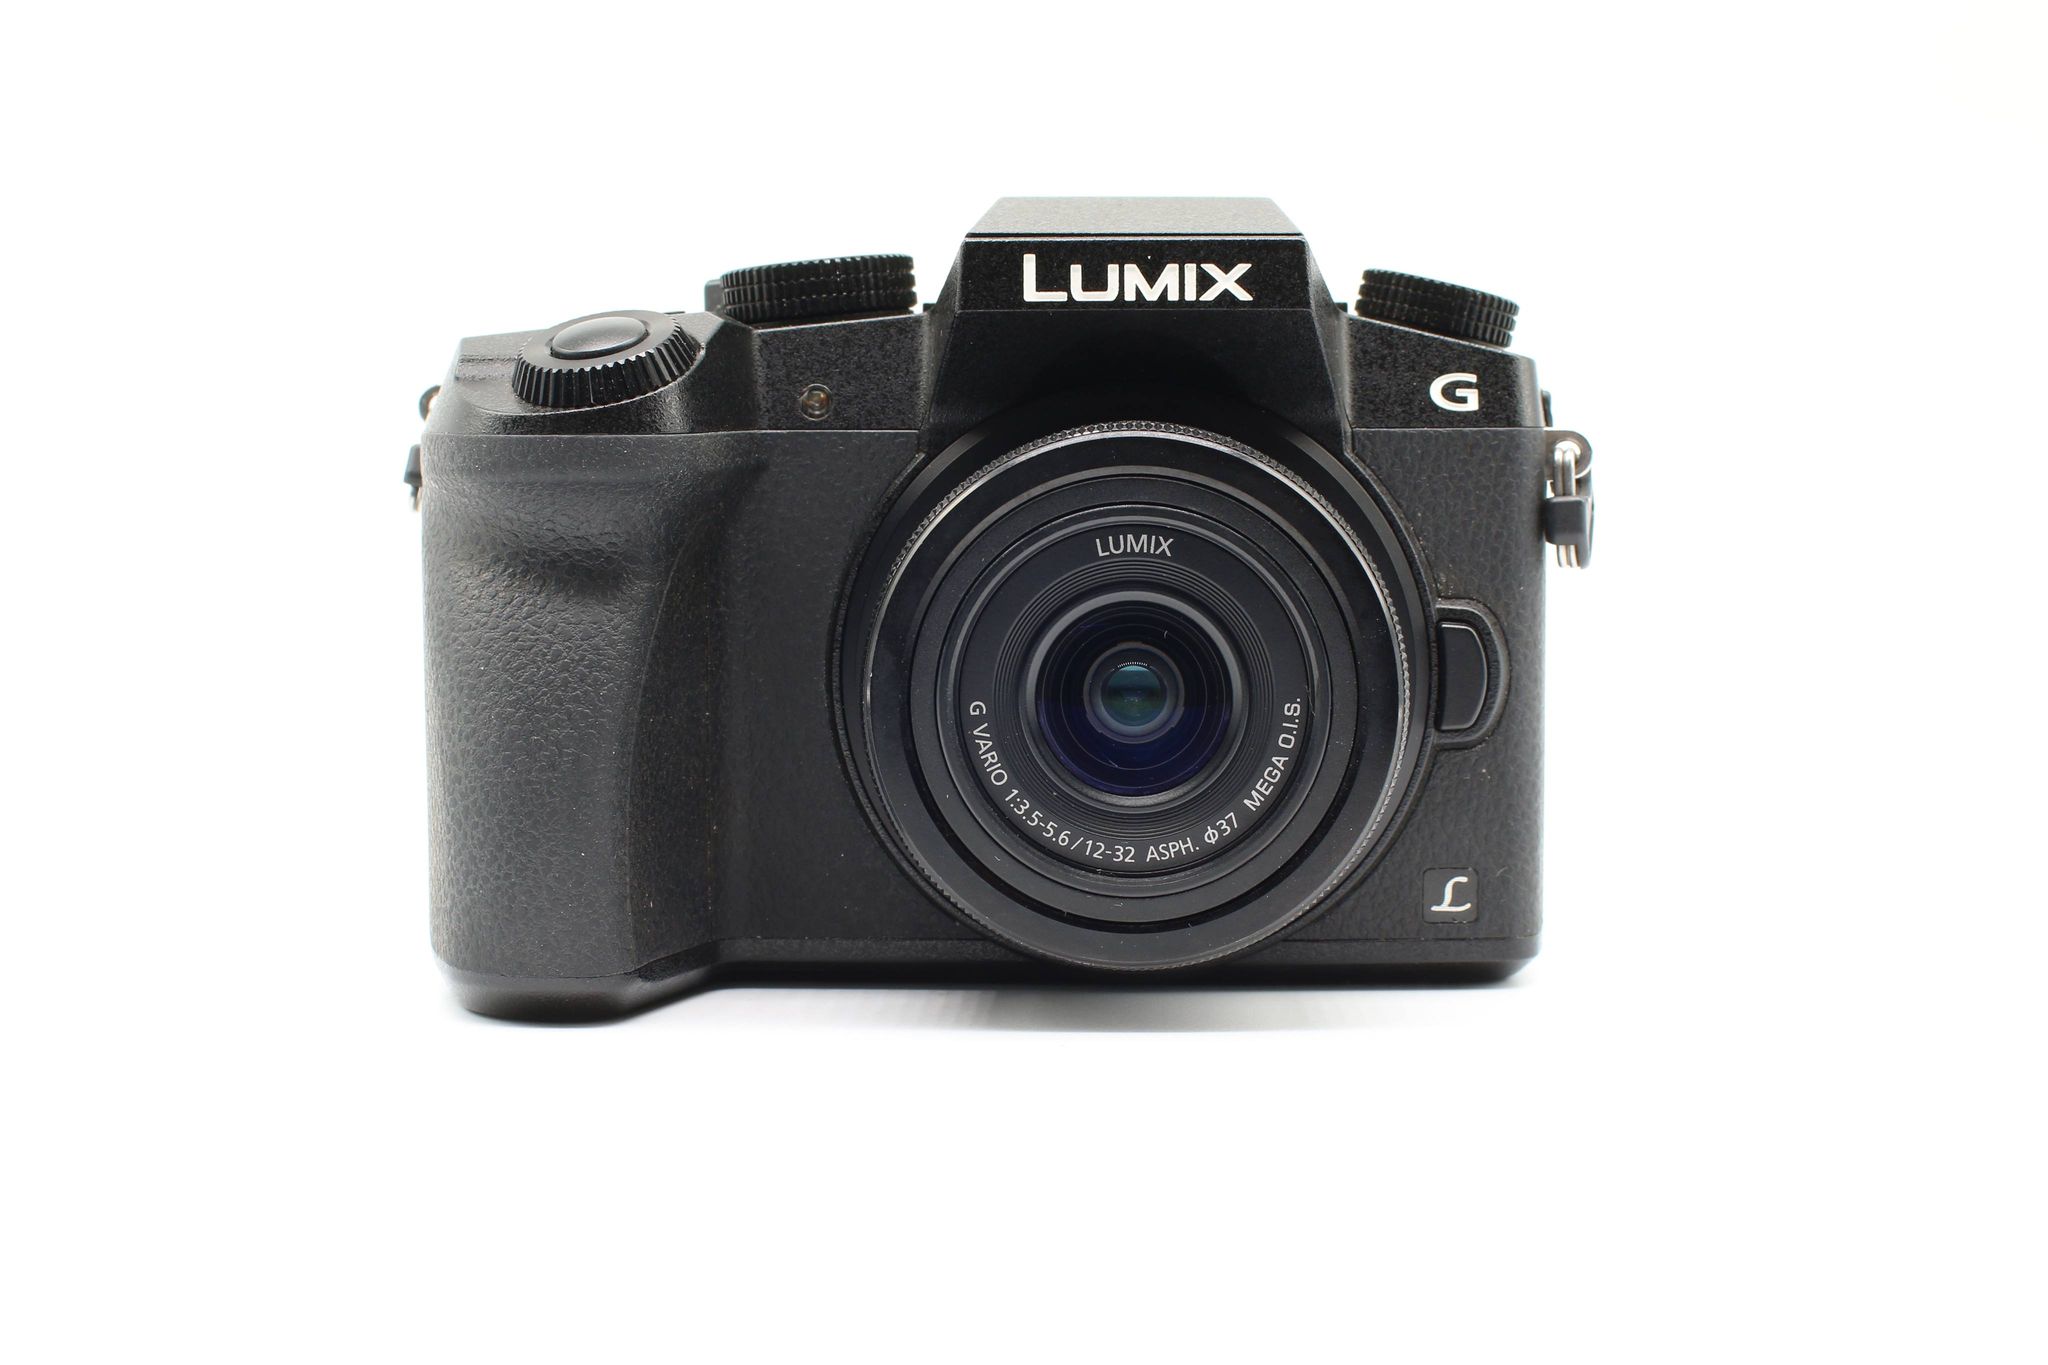 Máy ảnh Lumix DMC-G7 kèm lens 12-32 f/3.5-5.6, Mới 98%